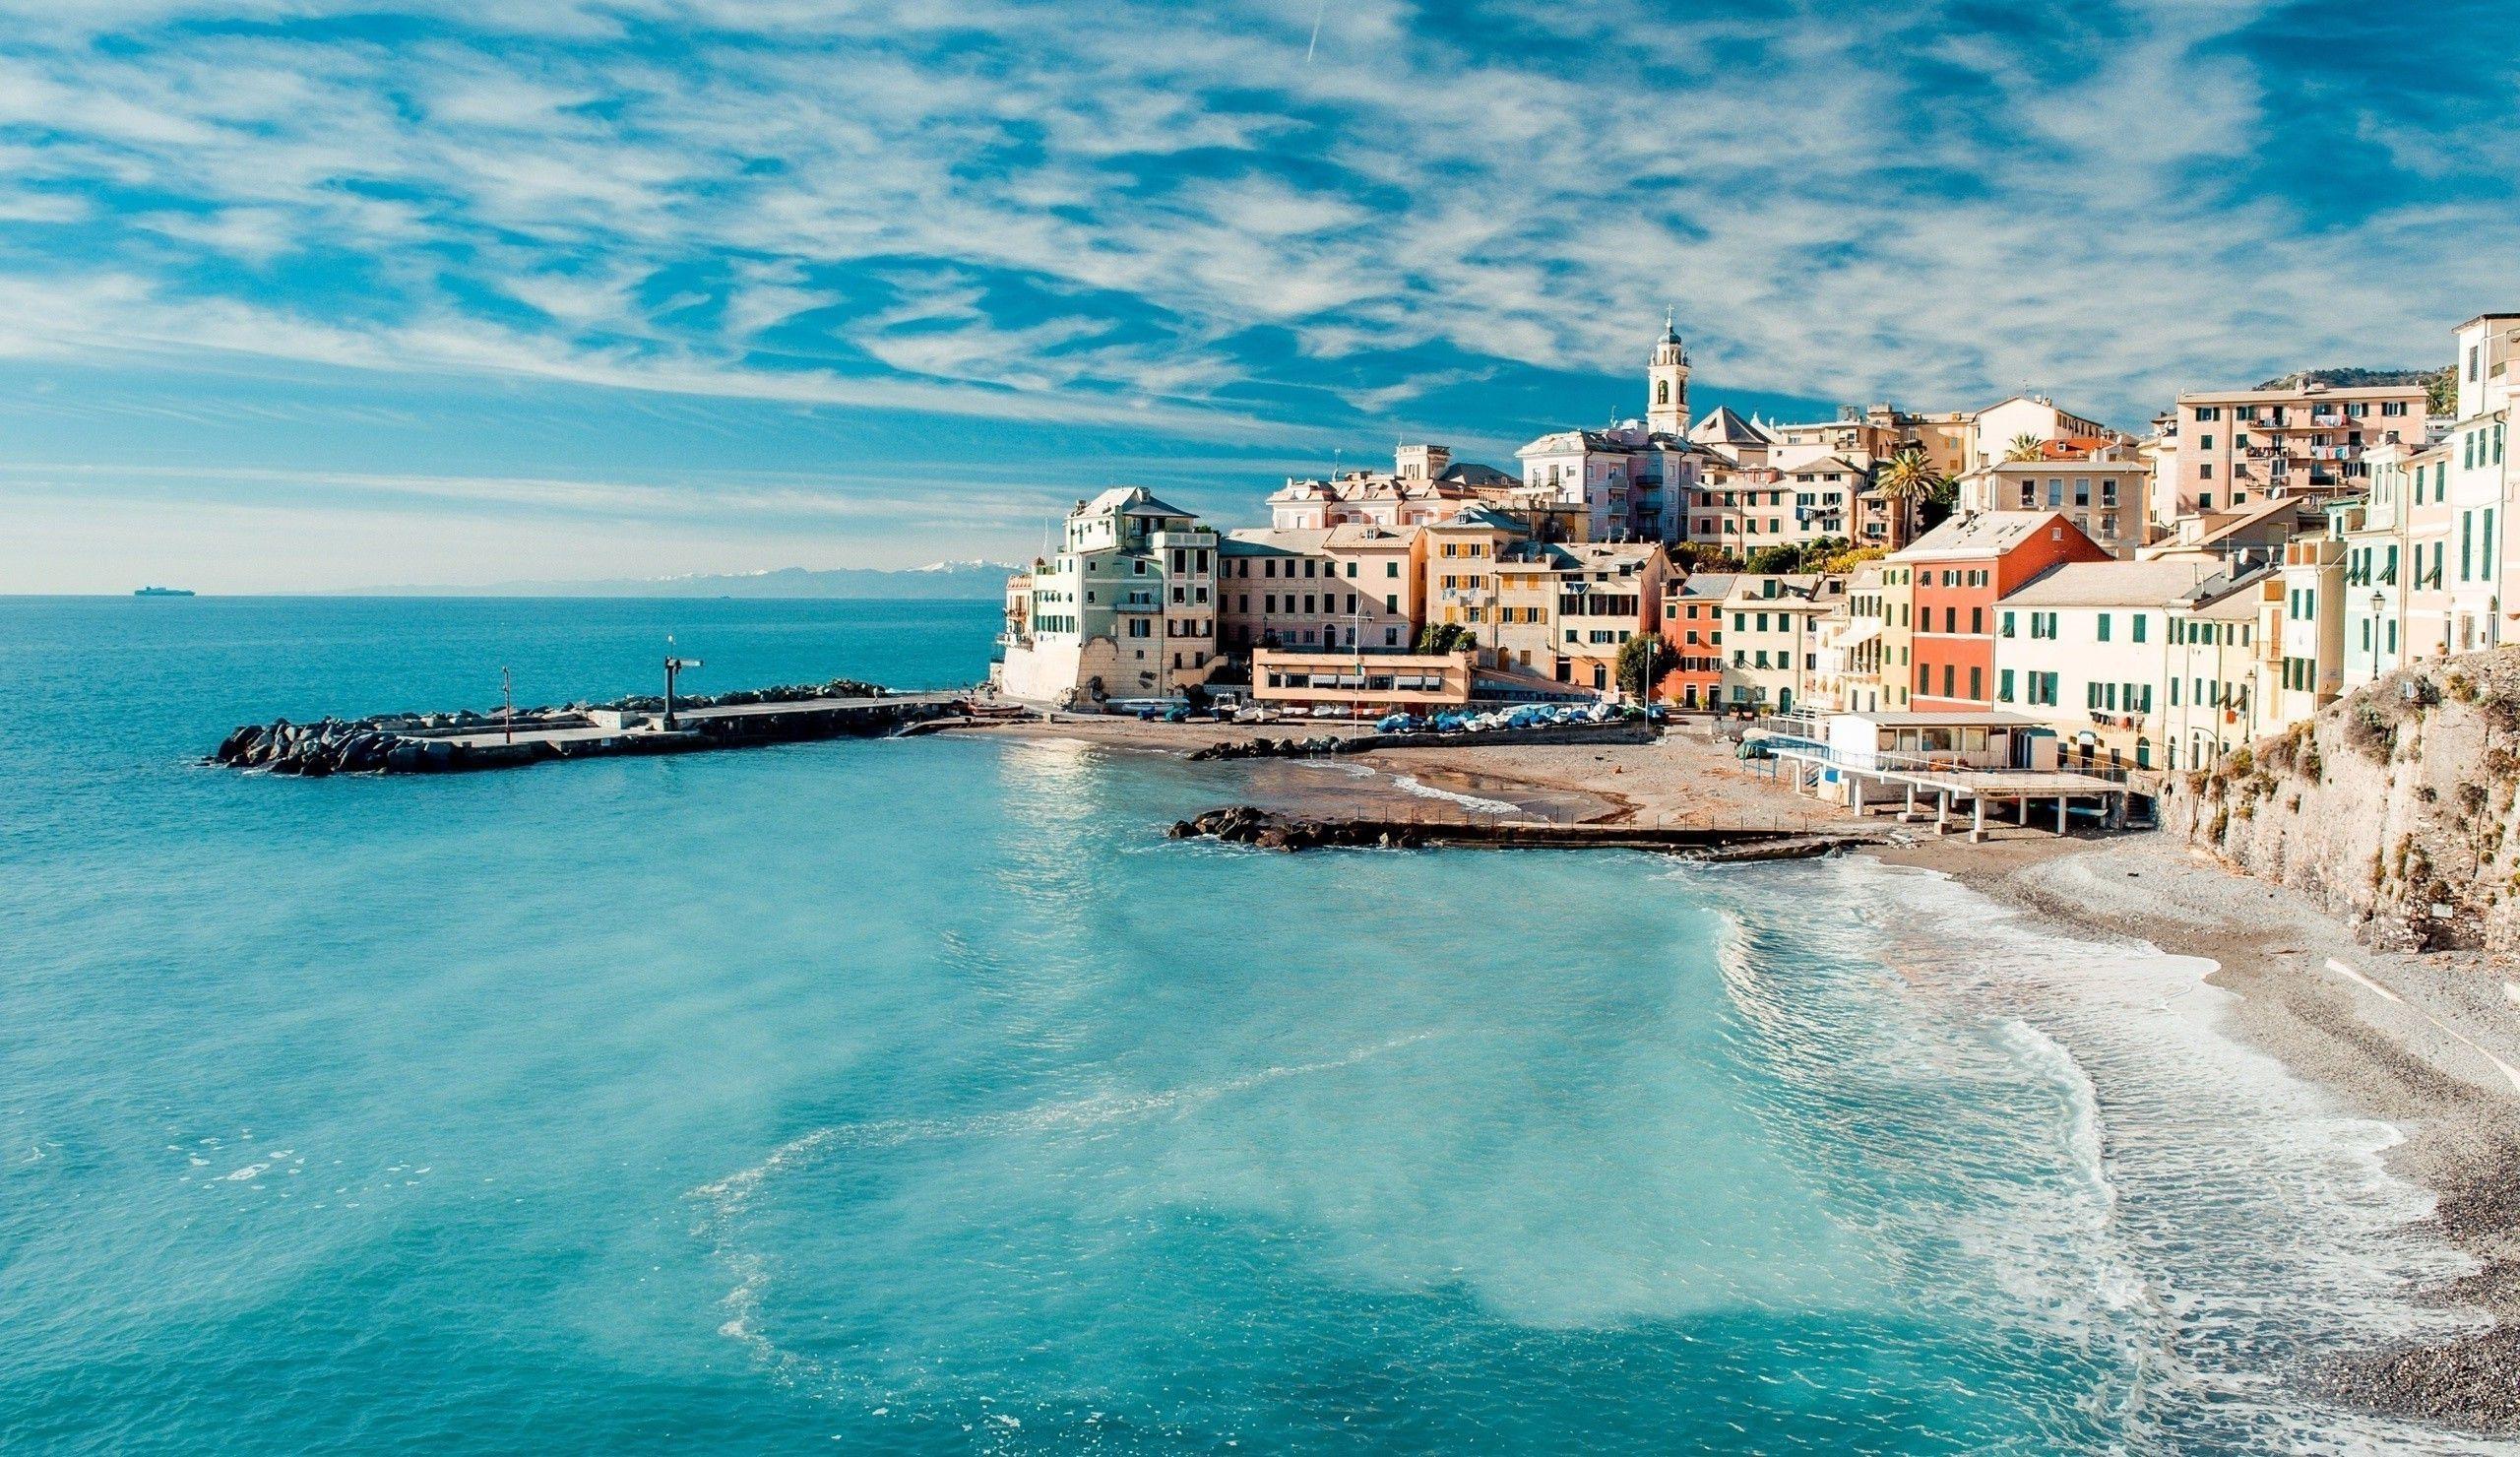 Bãi Biển Italia: Hình ảnh đầy nắng, gió biển và những hàng dương xanh mướt của Bãi Biển Italia sẽ khiến bạn như đang được sống trong một bức tranh hoàn hảo. Hãy cùng chiêm ngưỡng những vùng biển tuyệt đẹp này để thoát khỏi cuộc sống bận rộn và tìm lại sự thư thái trong tâm hồn.